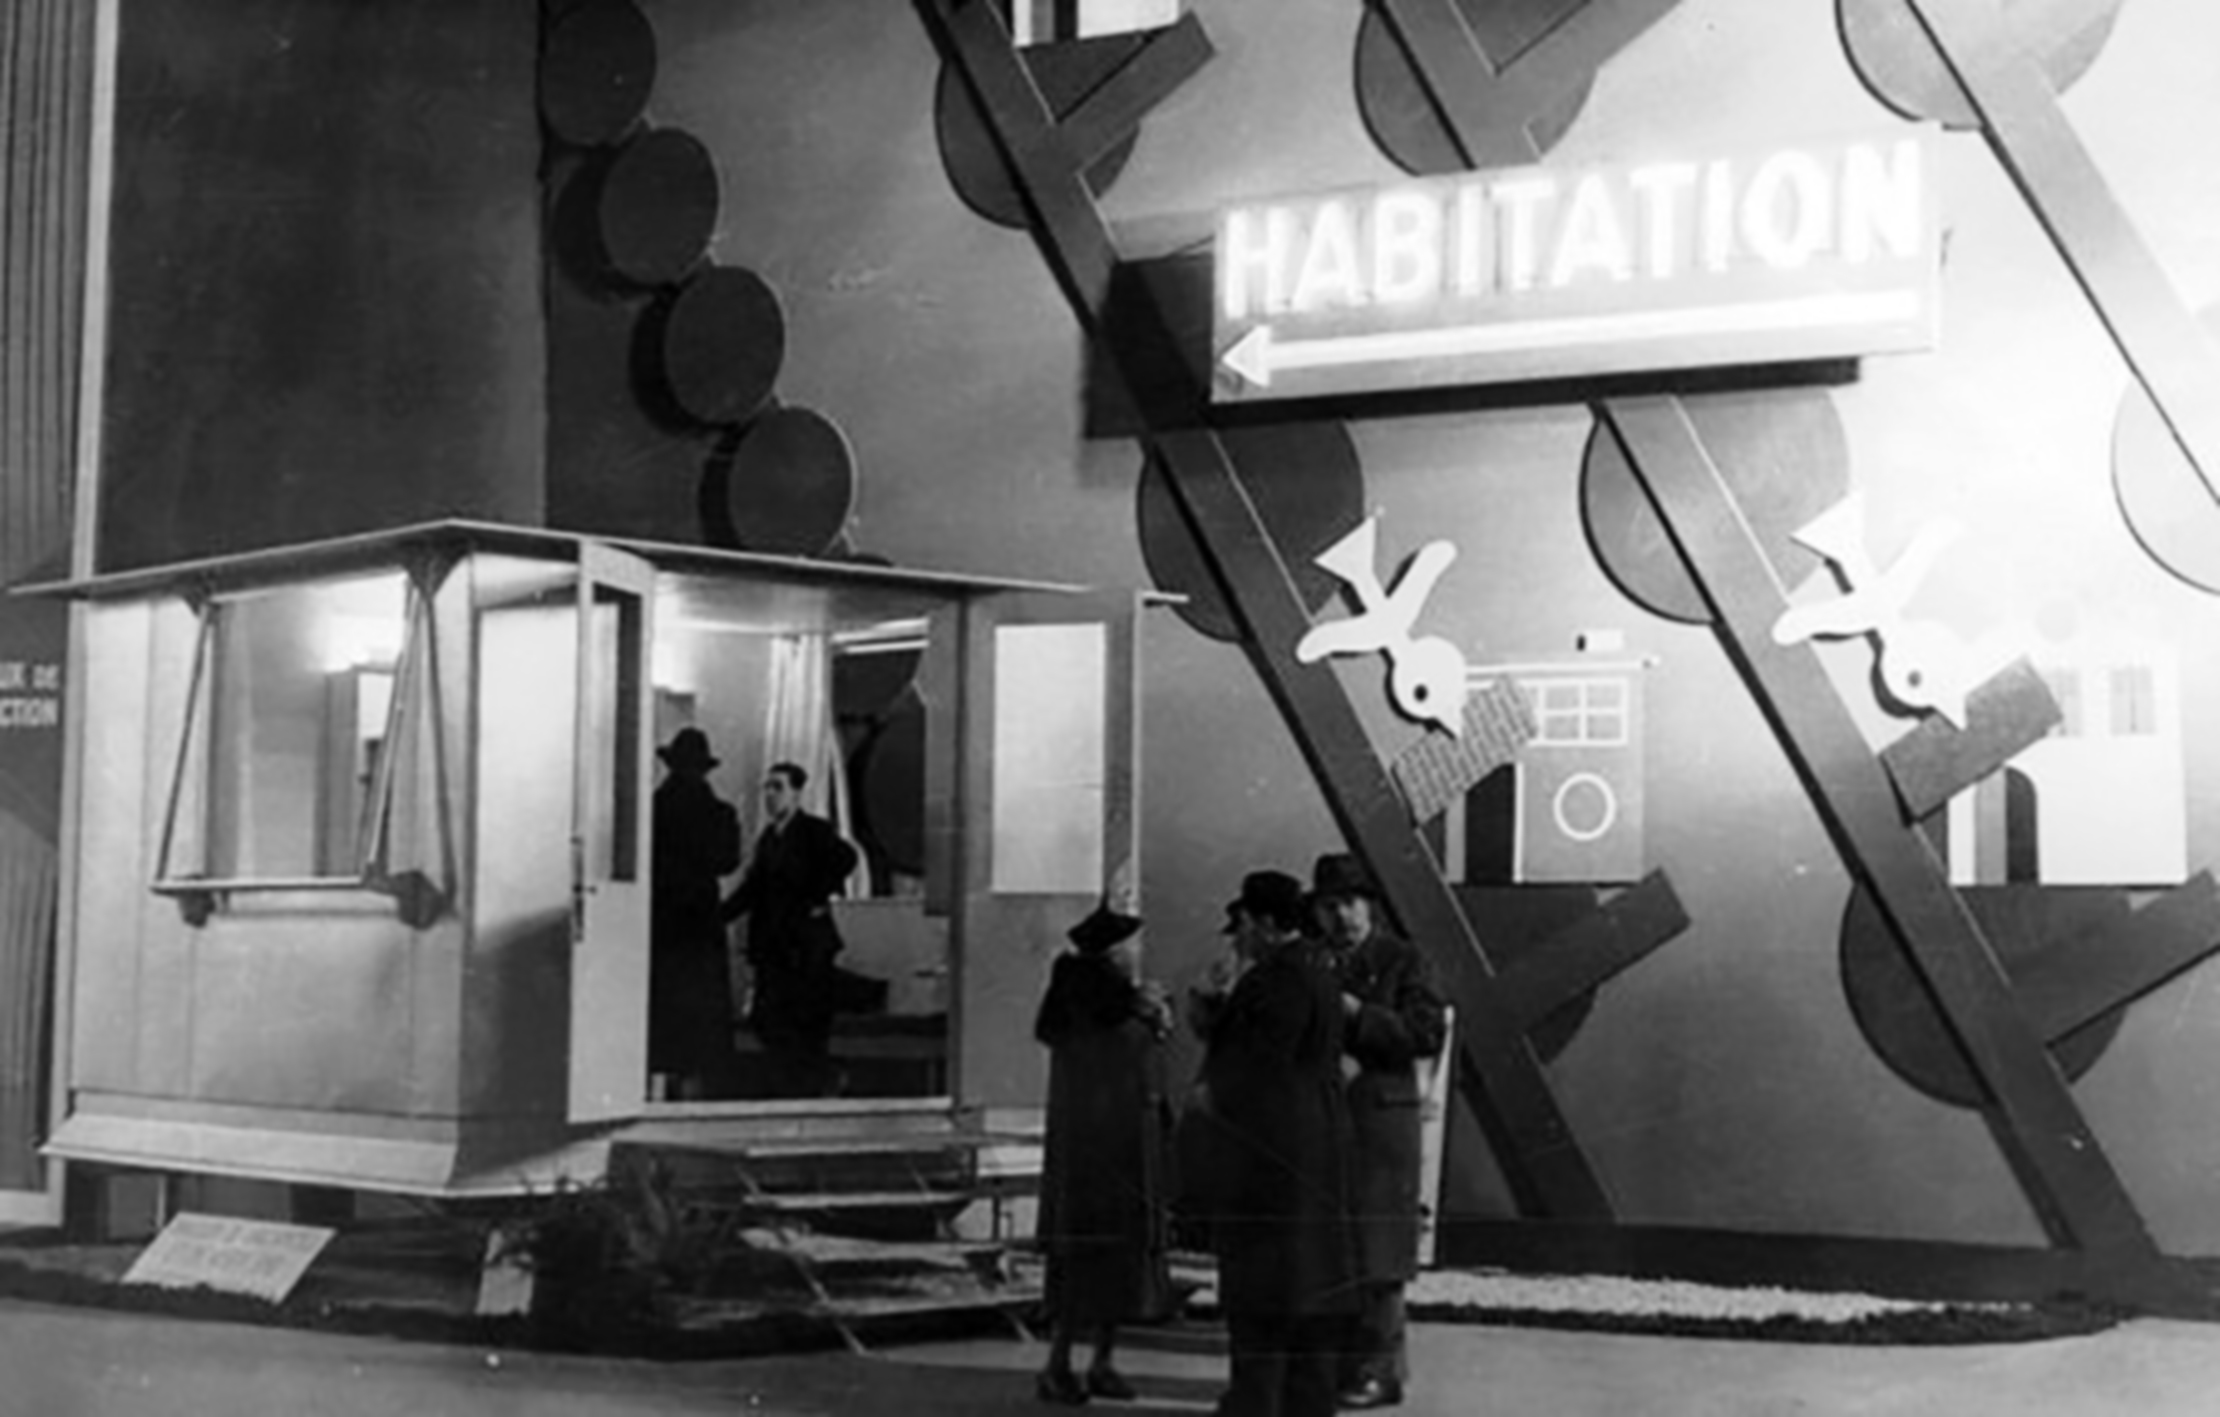 Maison de week-end BLPS (E. Beaudouin et M. Lods, arch., Ateliers Jean Prouvé, concepteur, Les Forges de Strasbourg, constructeur), prototype 1937. Exposition de l'habitation, Grand Palais, Paris, 1938.